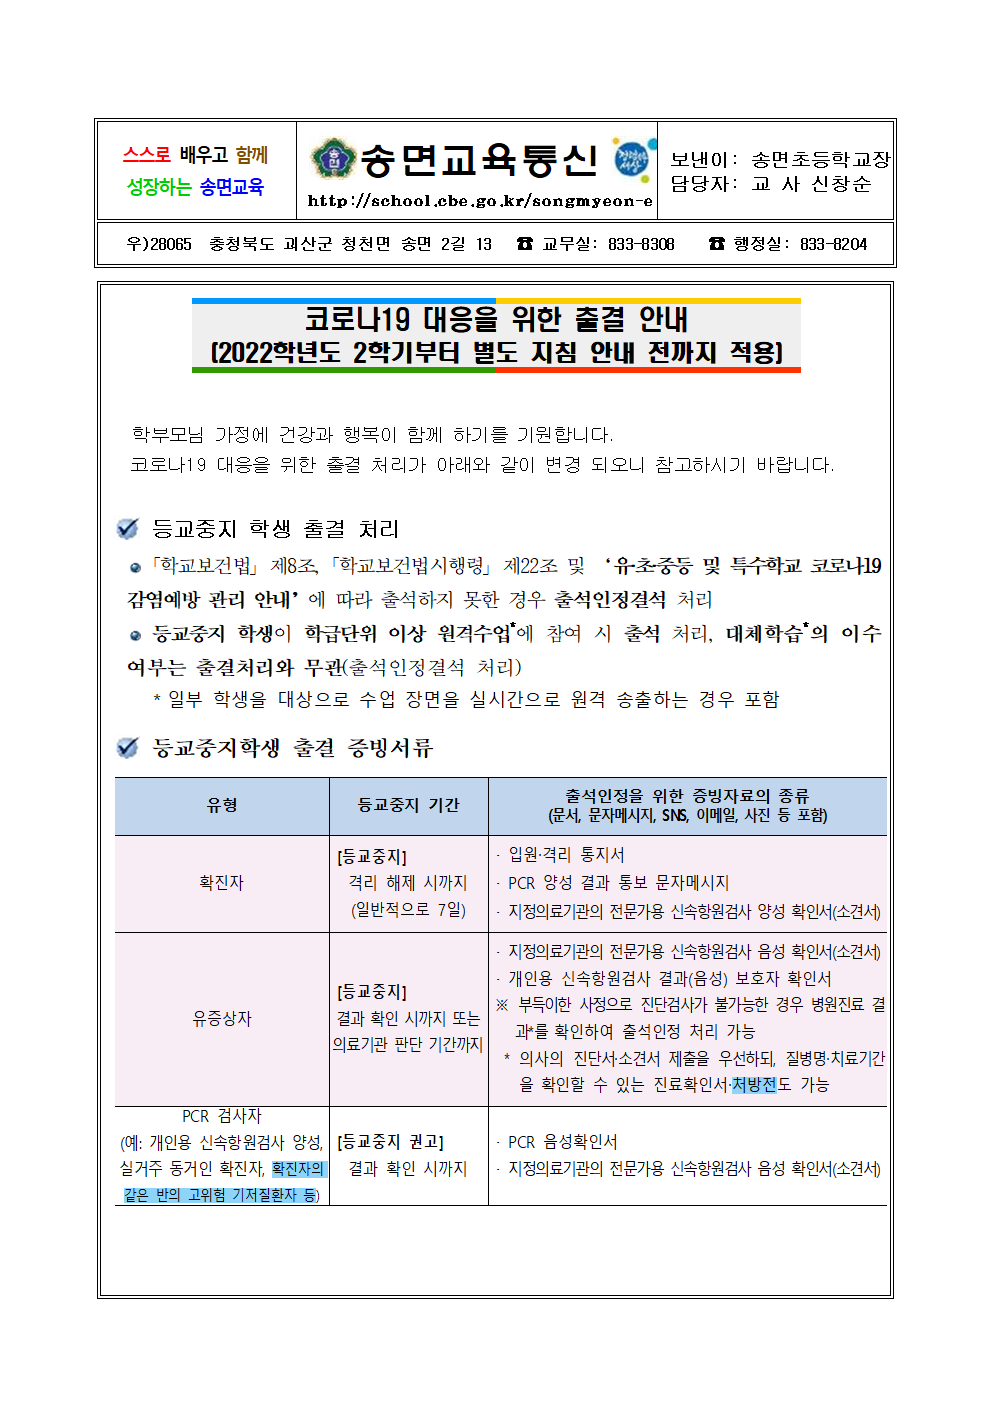 코로나19 대응을 위한 2학기 출결 안내 가정통신문(1)001